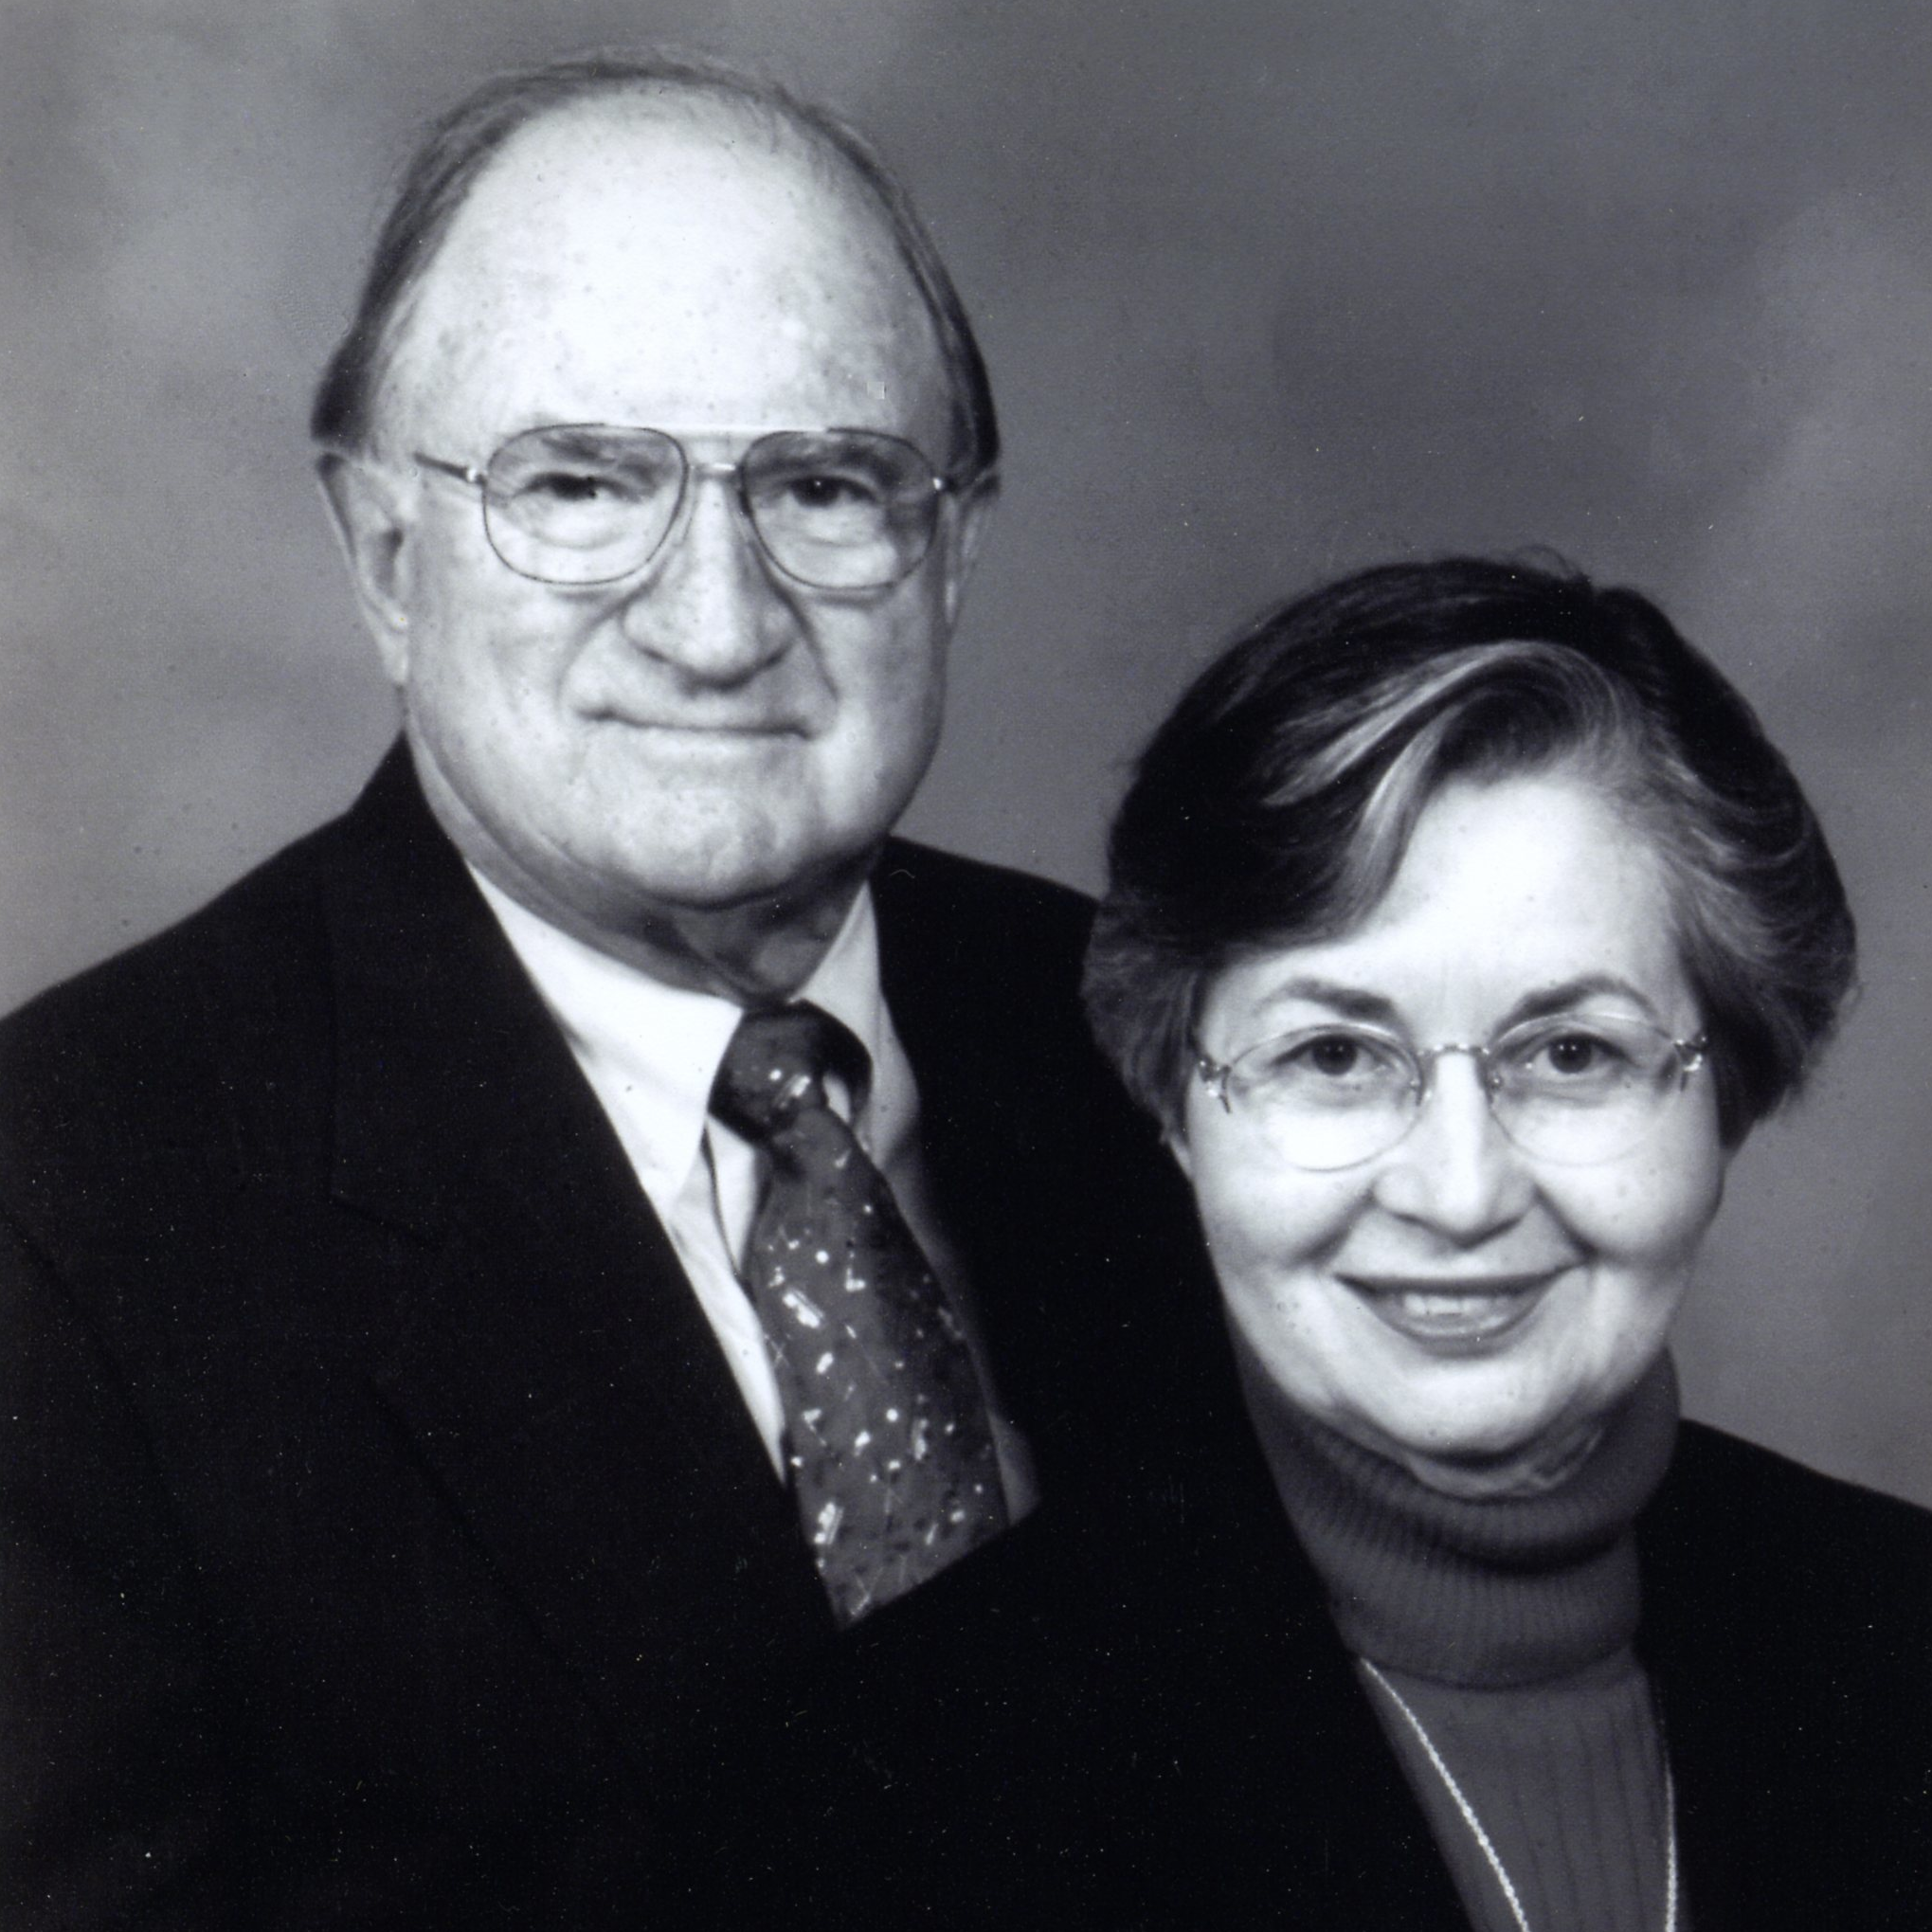 Mr. Don Parham and Mrs. Kay Parham